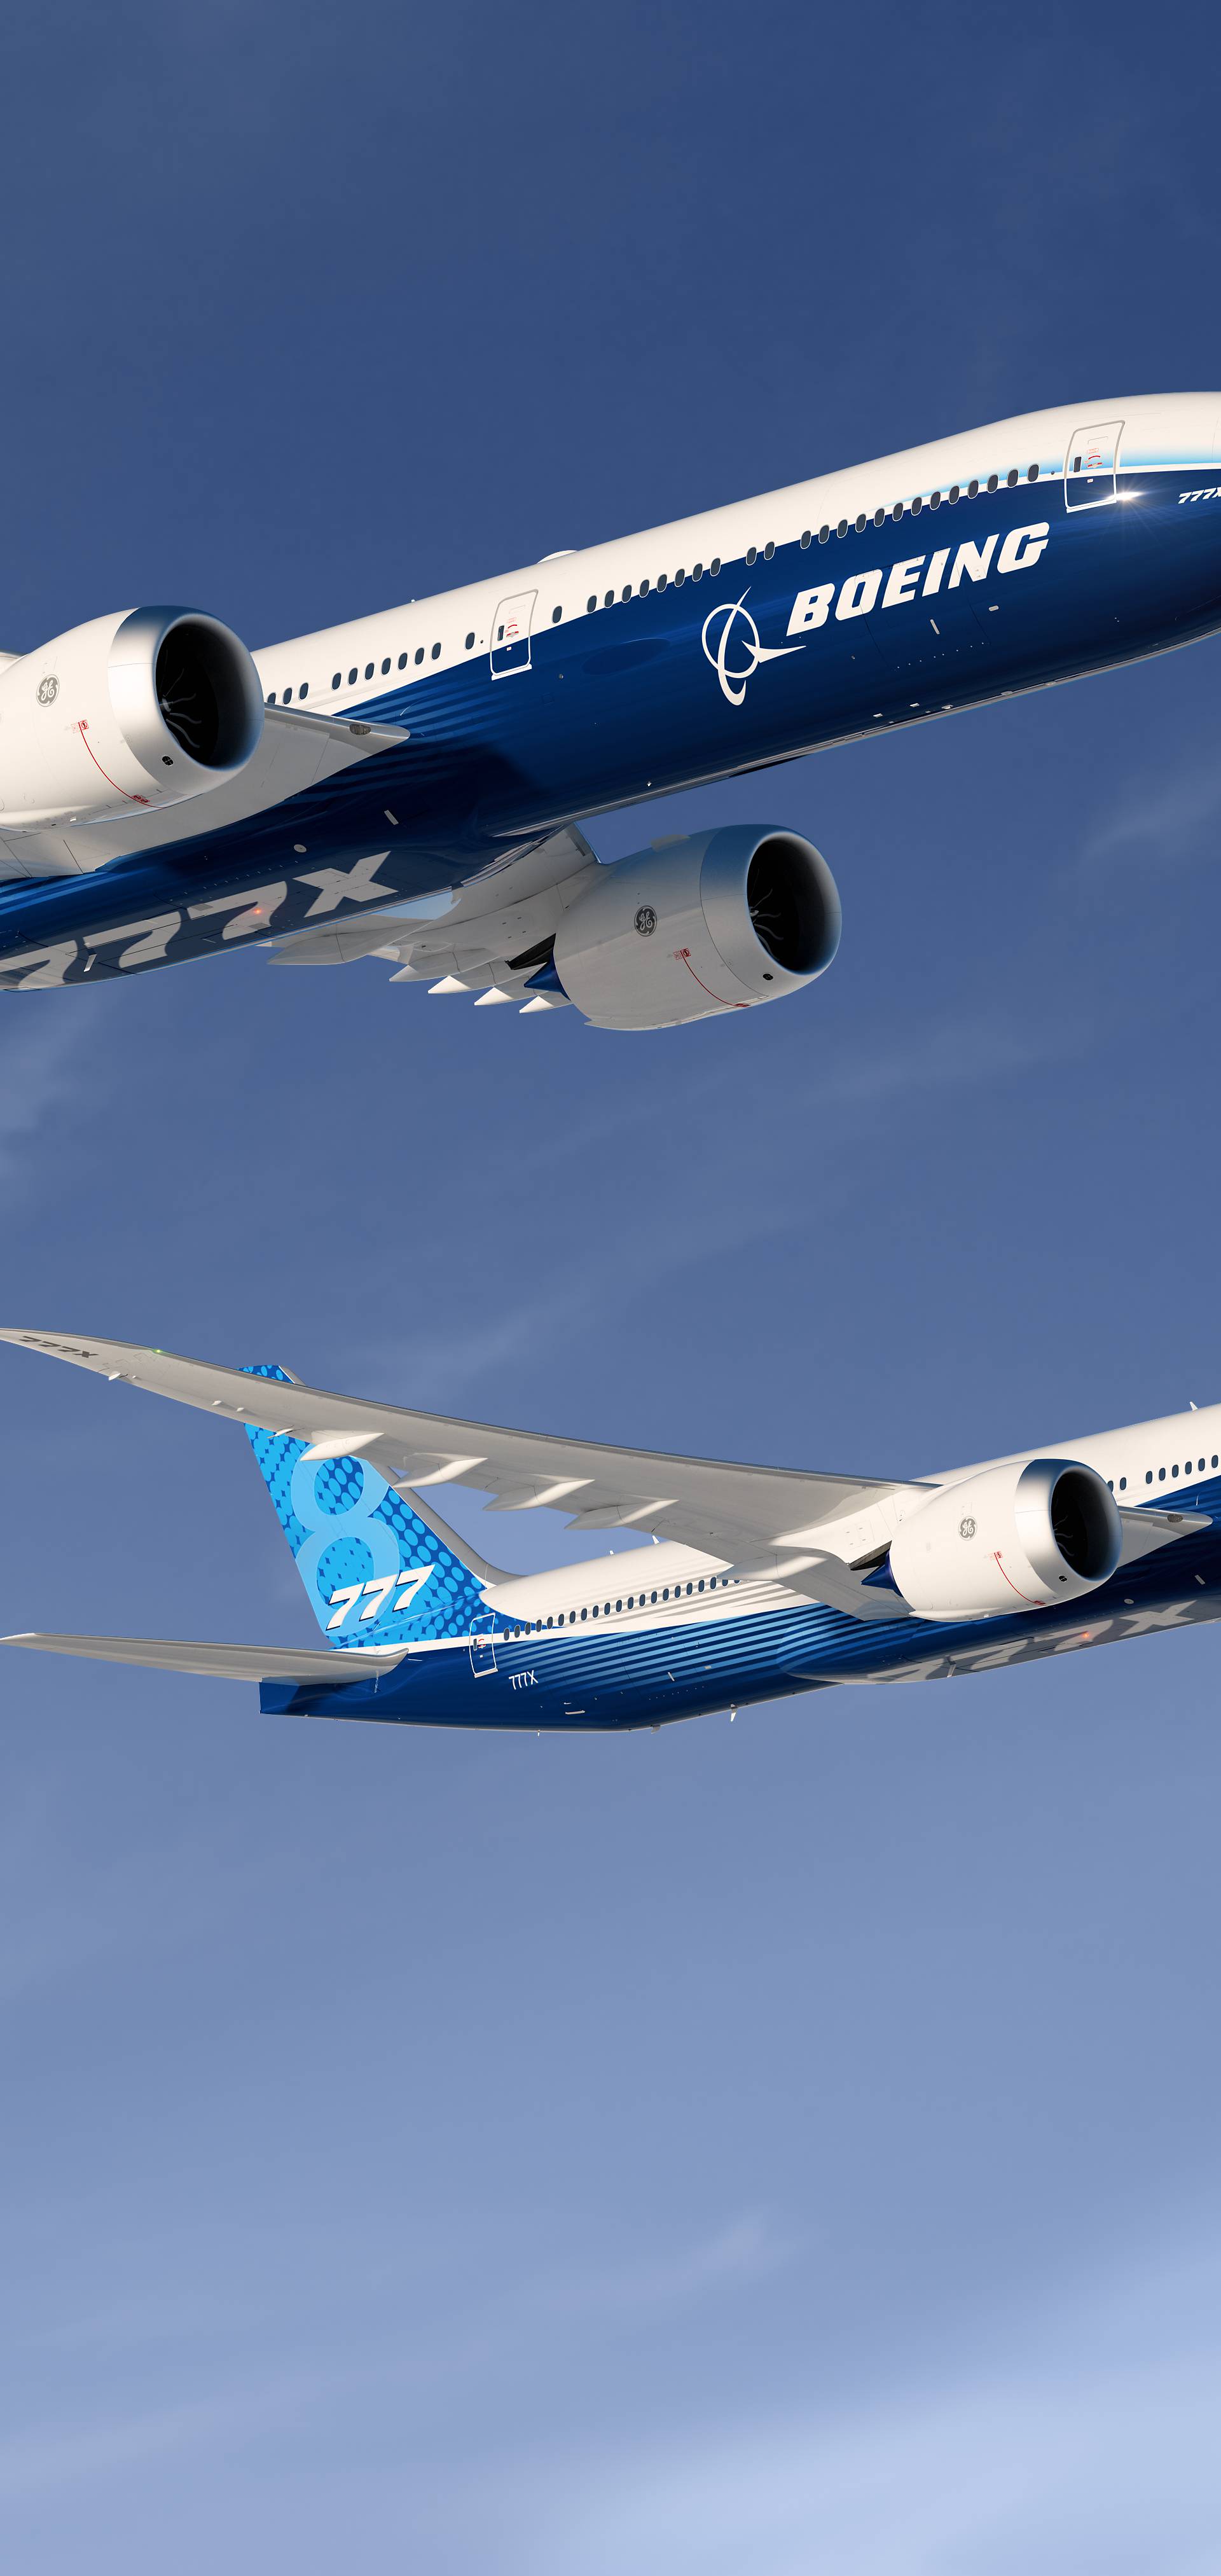 Boeingov novi 777X će ovog tjedna krenuti na pokusni let